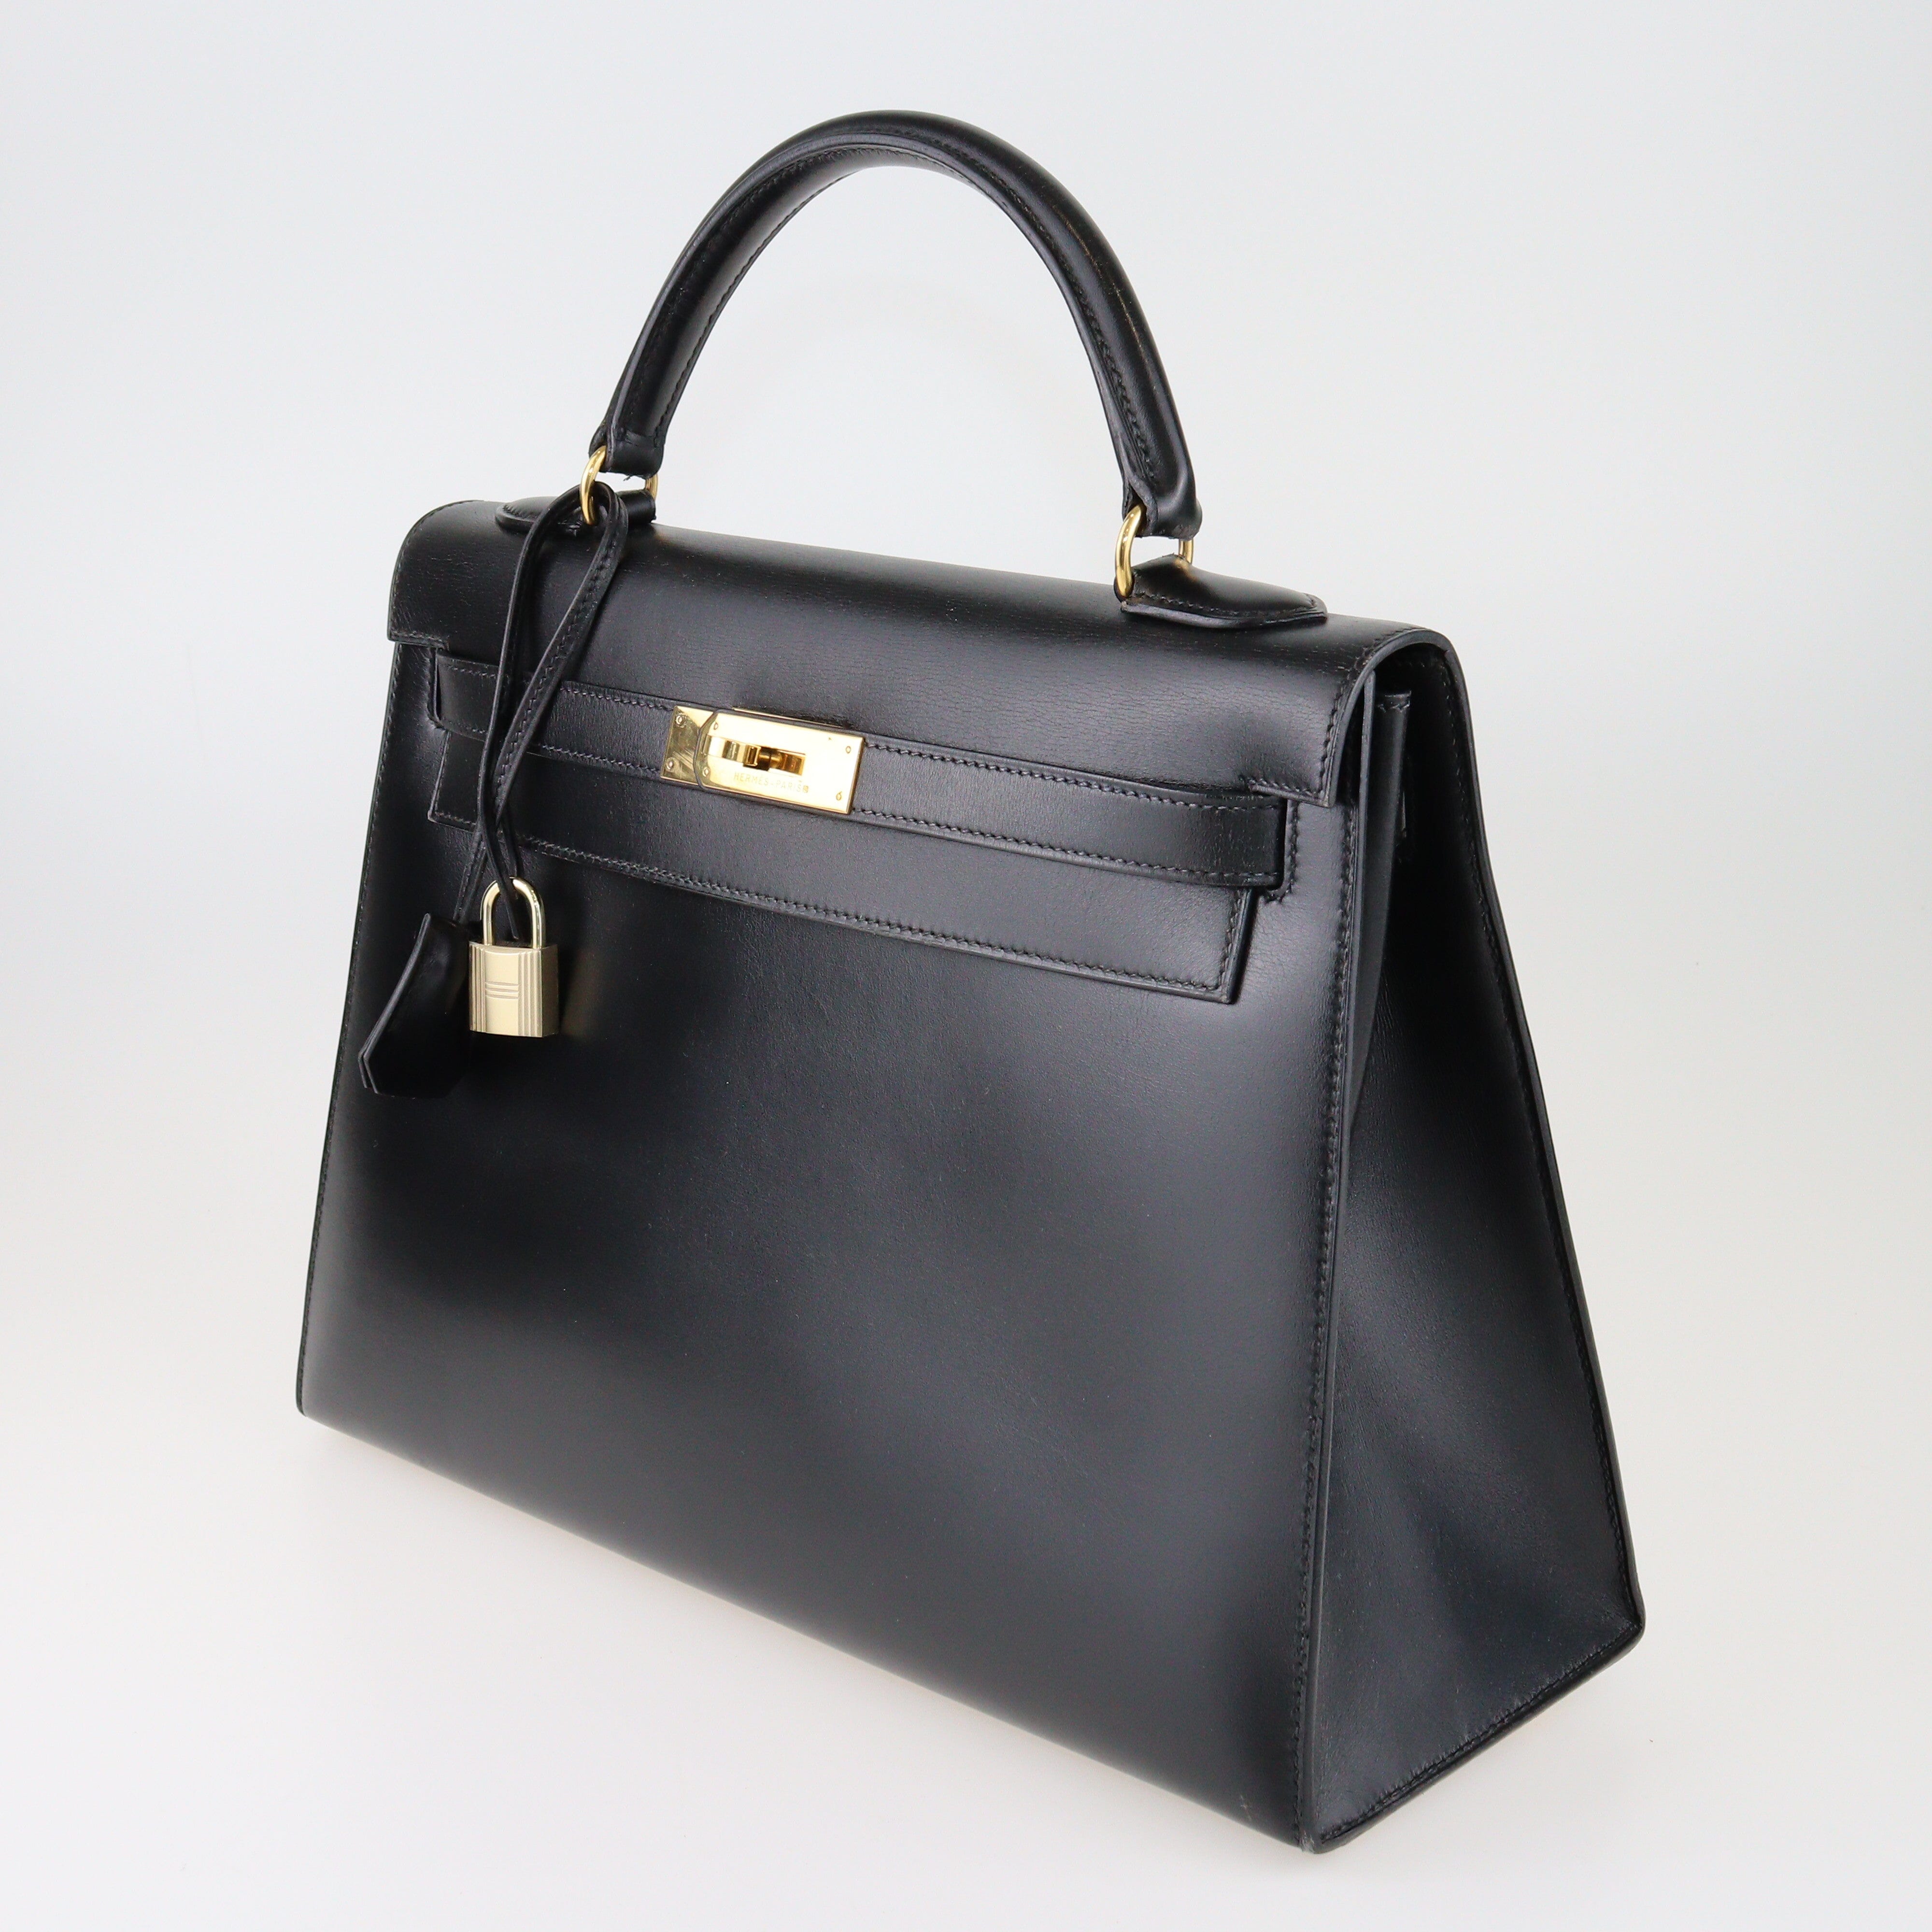 Black Box Calf Kelly Sellier 32 GHW Bag Bags Hermes 